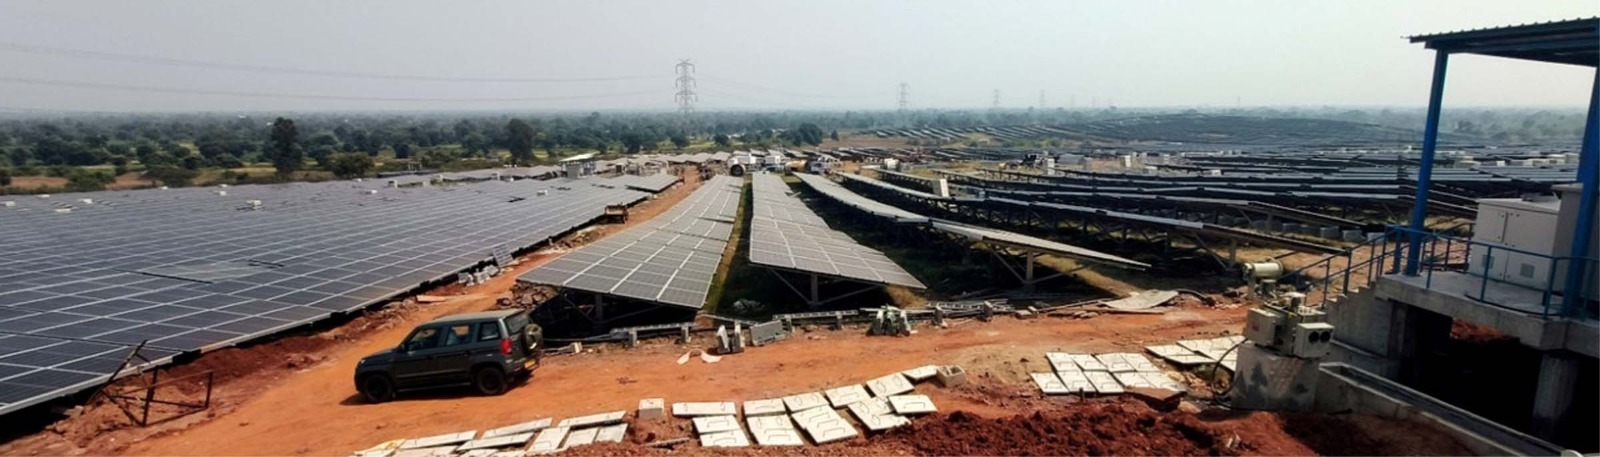 Chhattisgarh news: छत्तीसगढ़ में देश का पहला सबसे बड़ा सौर ऊर्जा संयंत्र स्थापित